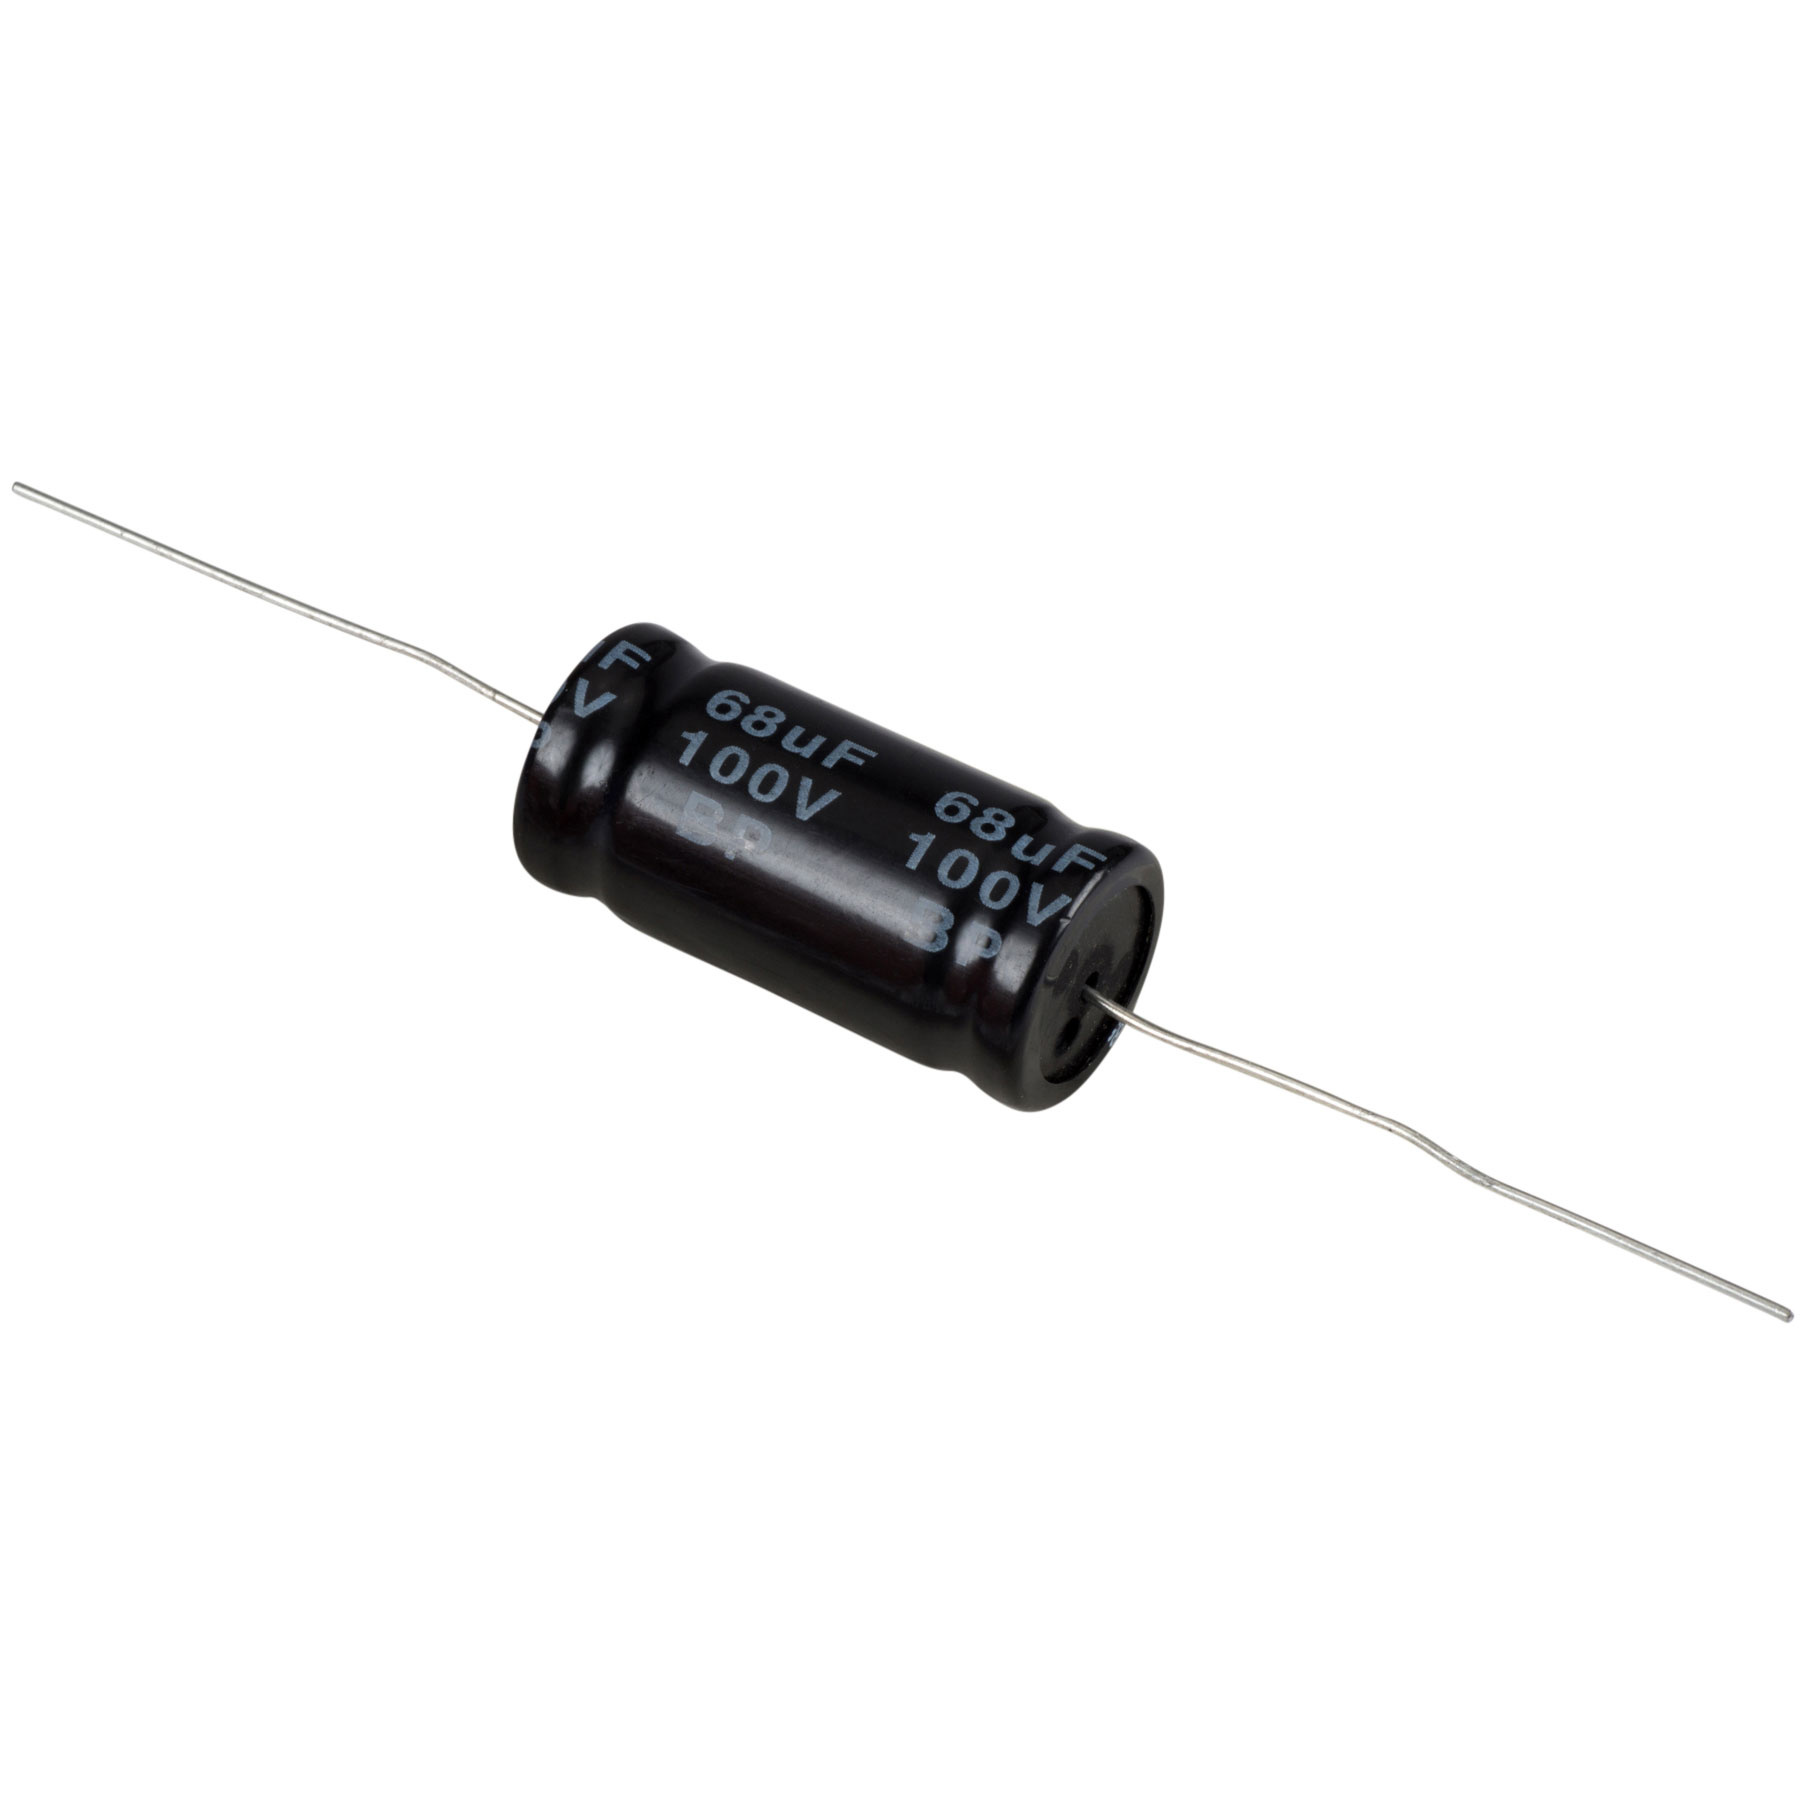 Condensatoare - Condensator electrolitic bipolar 68 µF | 10% | 100 V, audioclub.ro